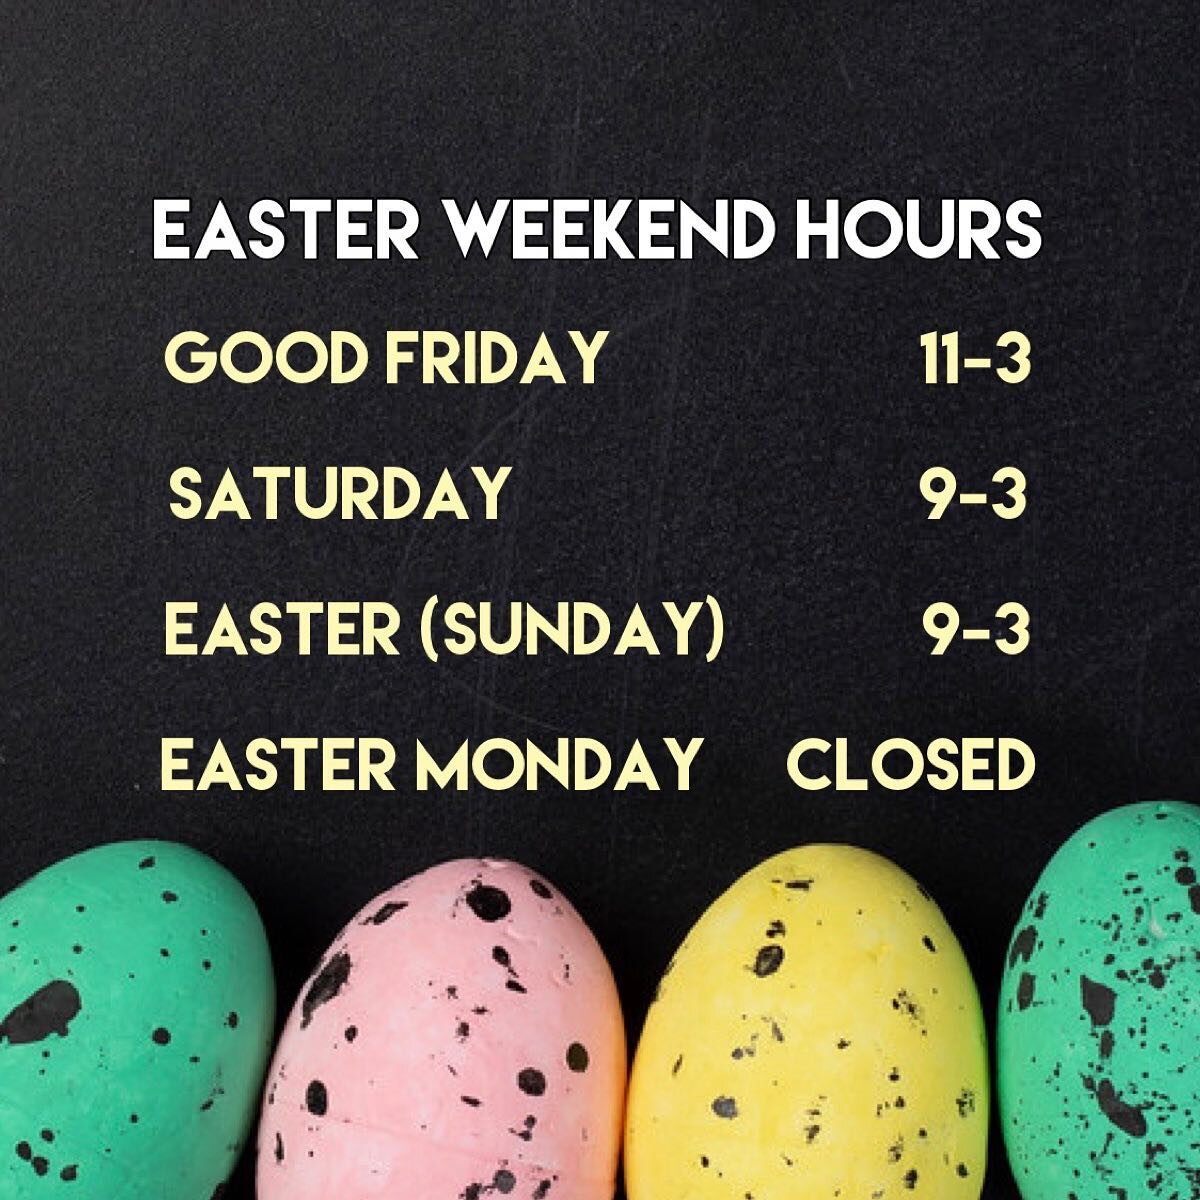 We hope everyone has a great Easter weekend 🐣🐰💐